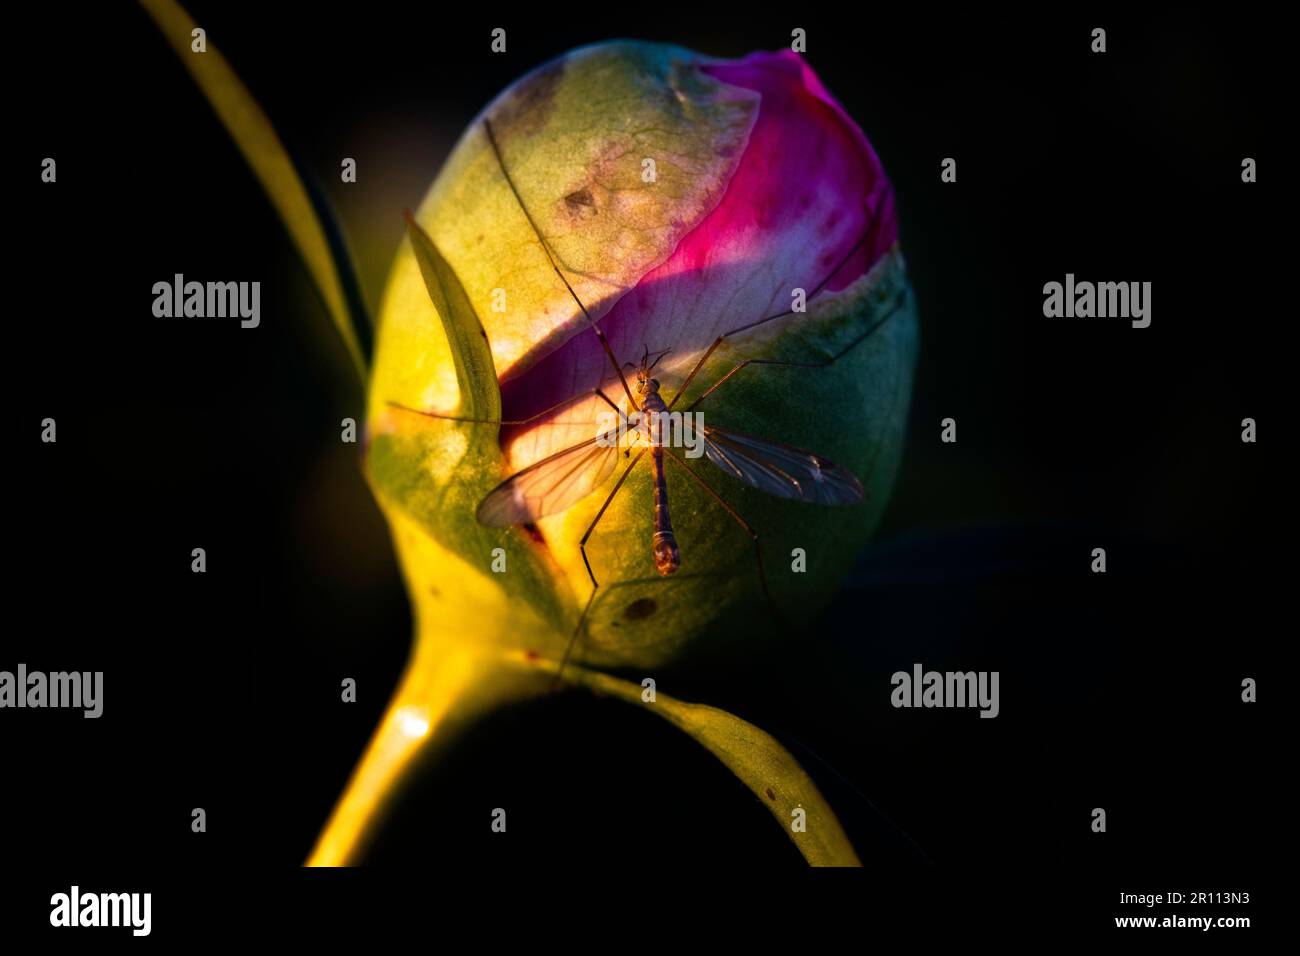 Ein Vernalkranich (Kranfliege) trinkt Nektar aus der vergrößerten Blütenknospe eines Pfingststrauchs während der goldenen Stunde des Lichts. Das ist ein gewöhnlicher Frühlingsanblick. Stockfoto